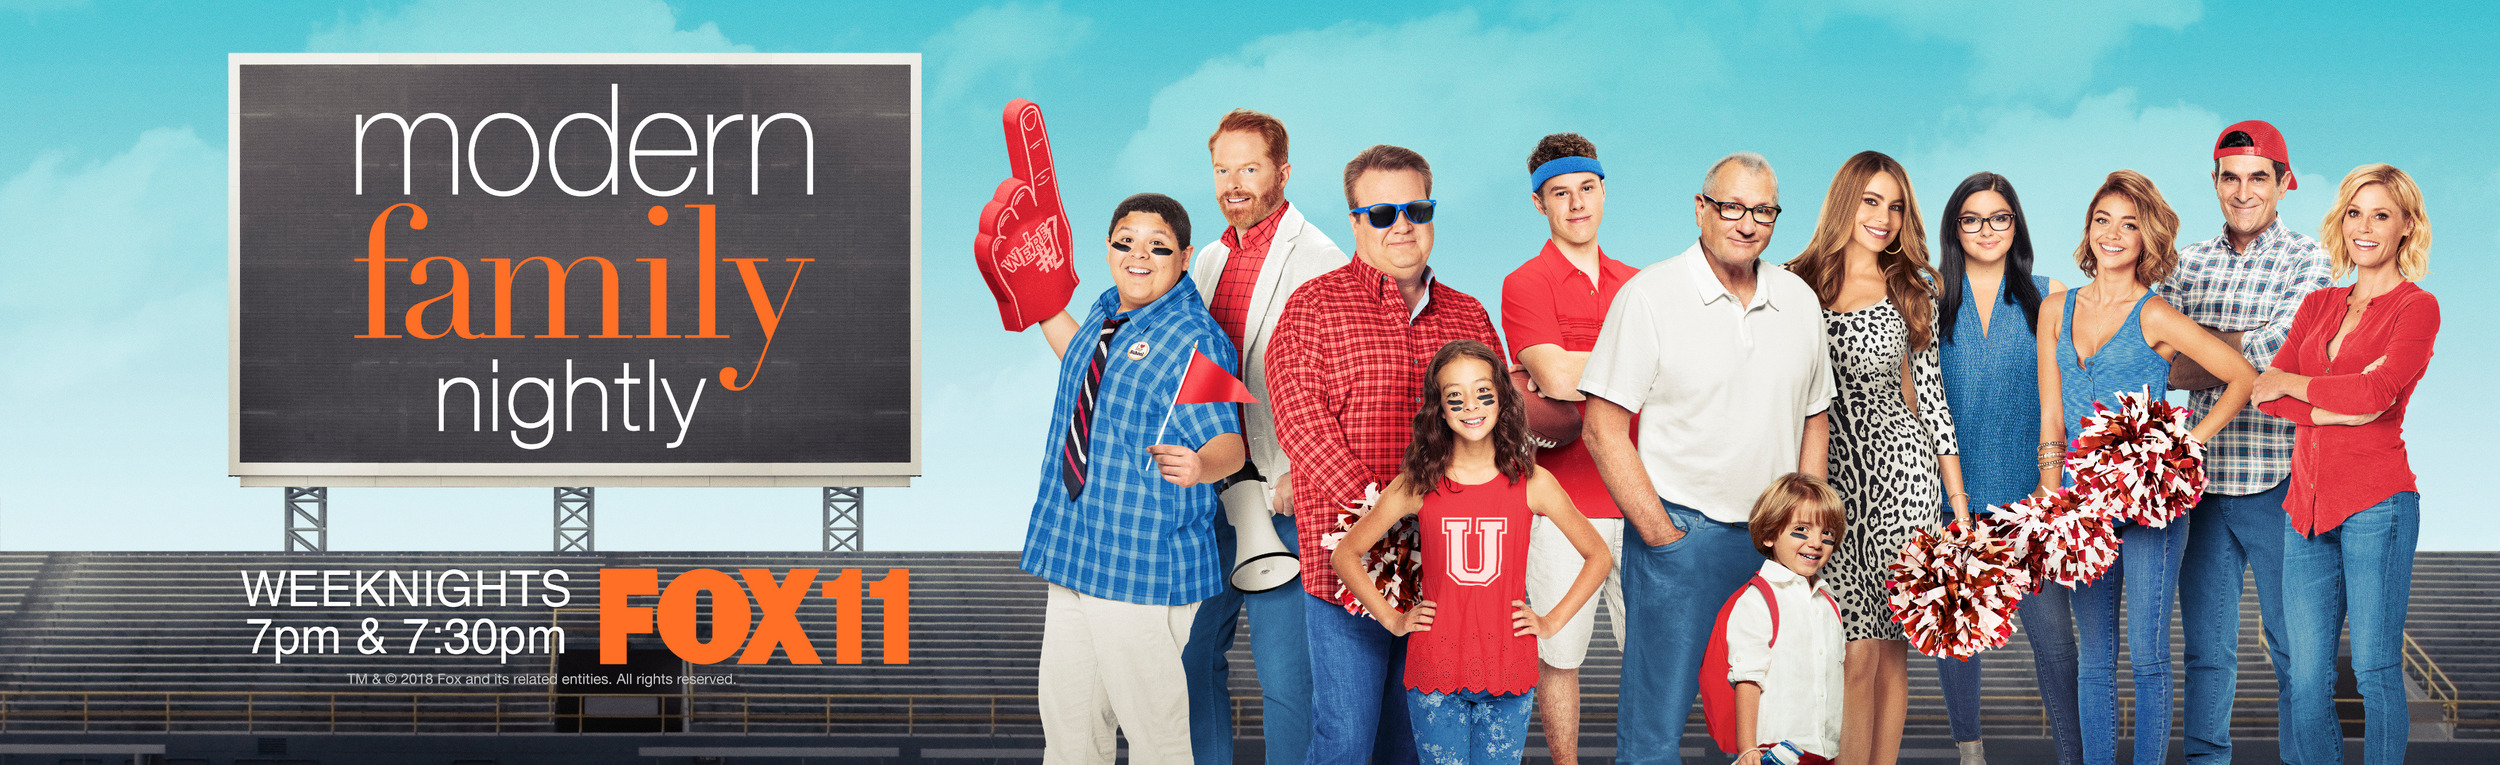 Mega Sized TV Poster Image for Modern Family (#17 of 19)